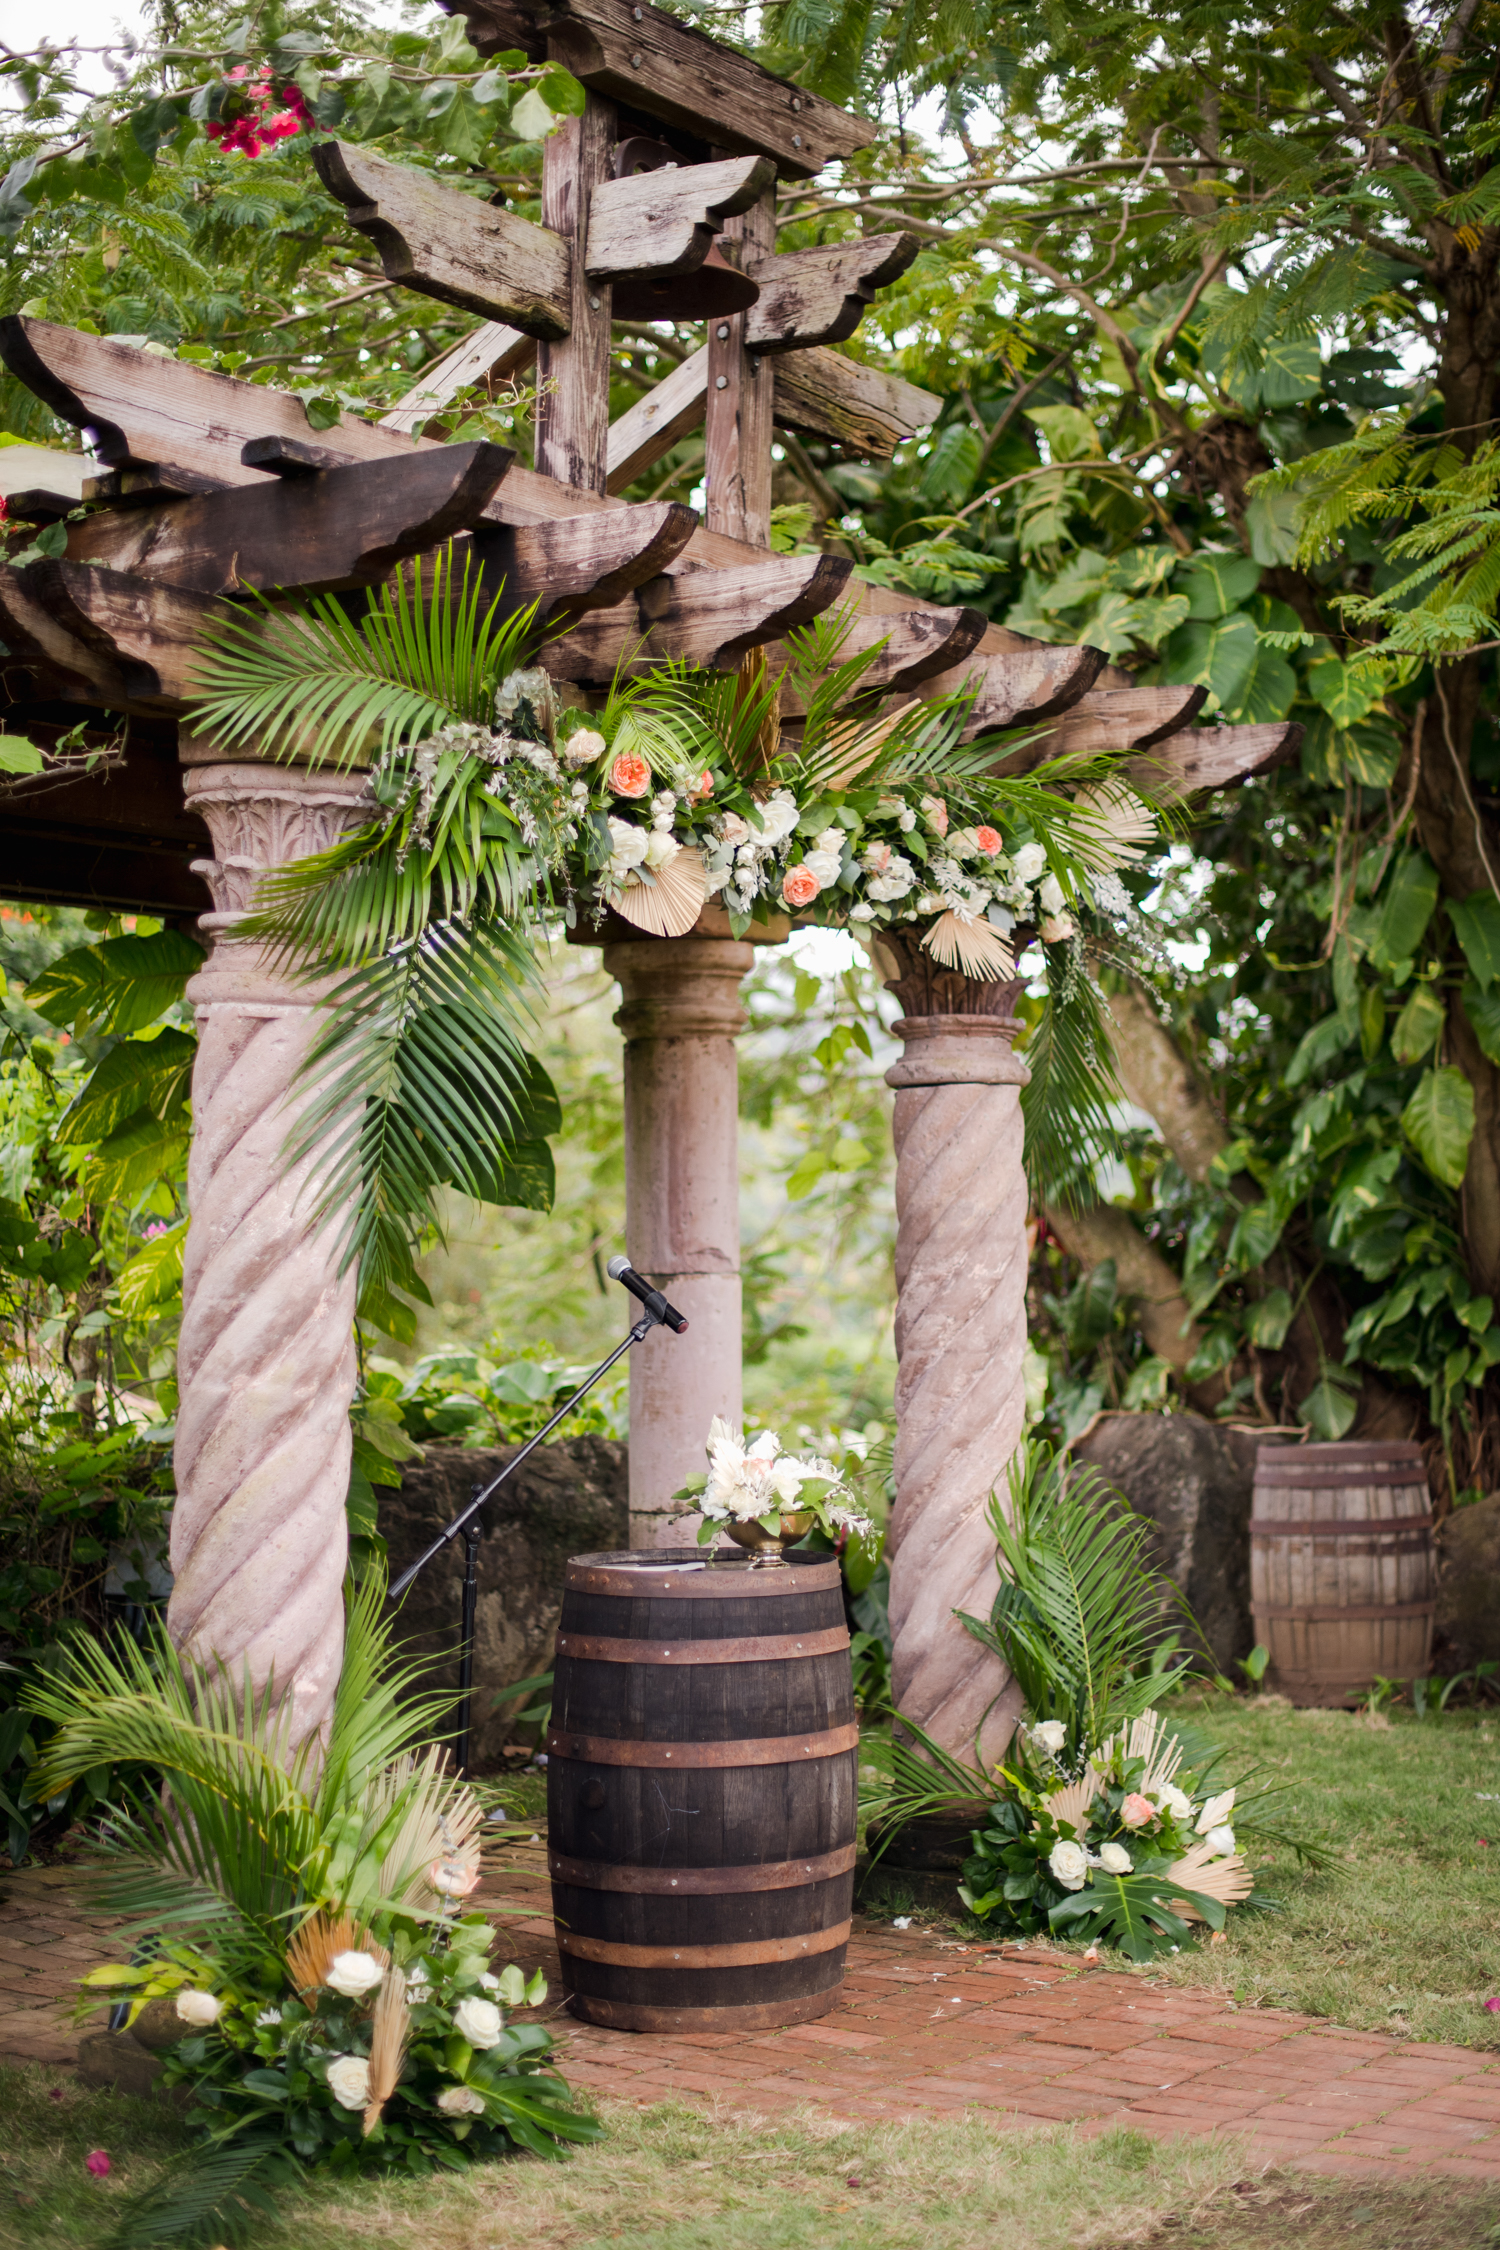 bohemian tropical destination wedding photography in hacienda siesta alegre puerto rico